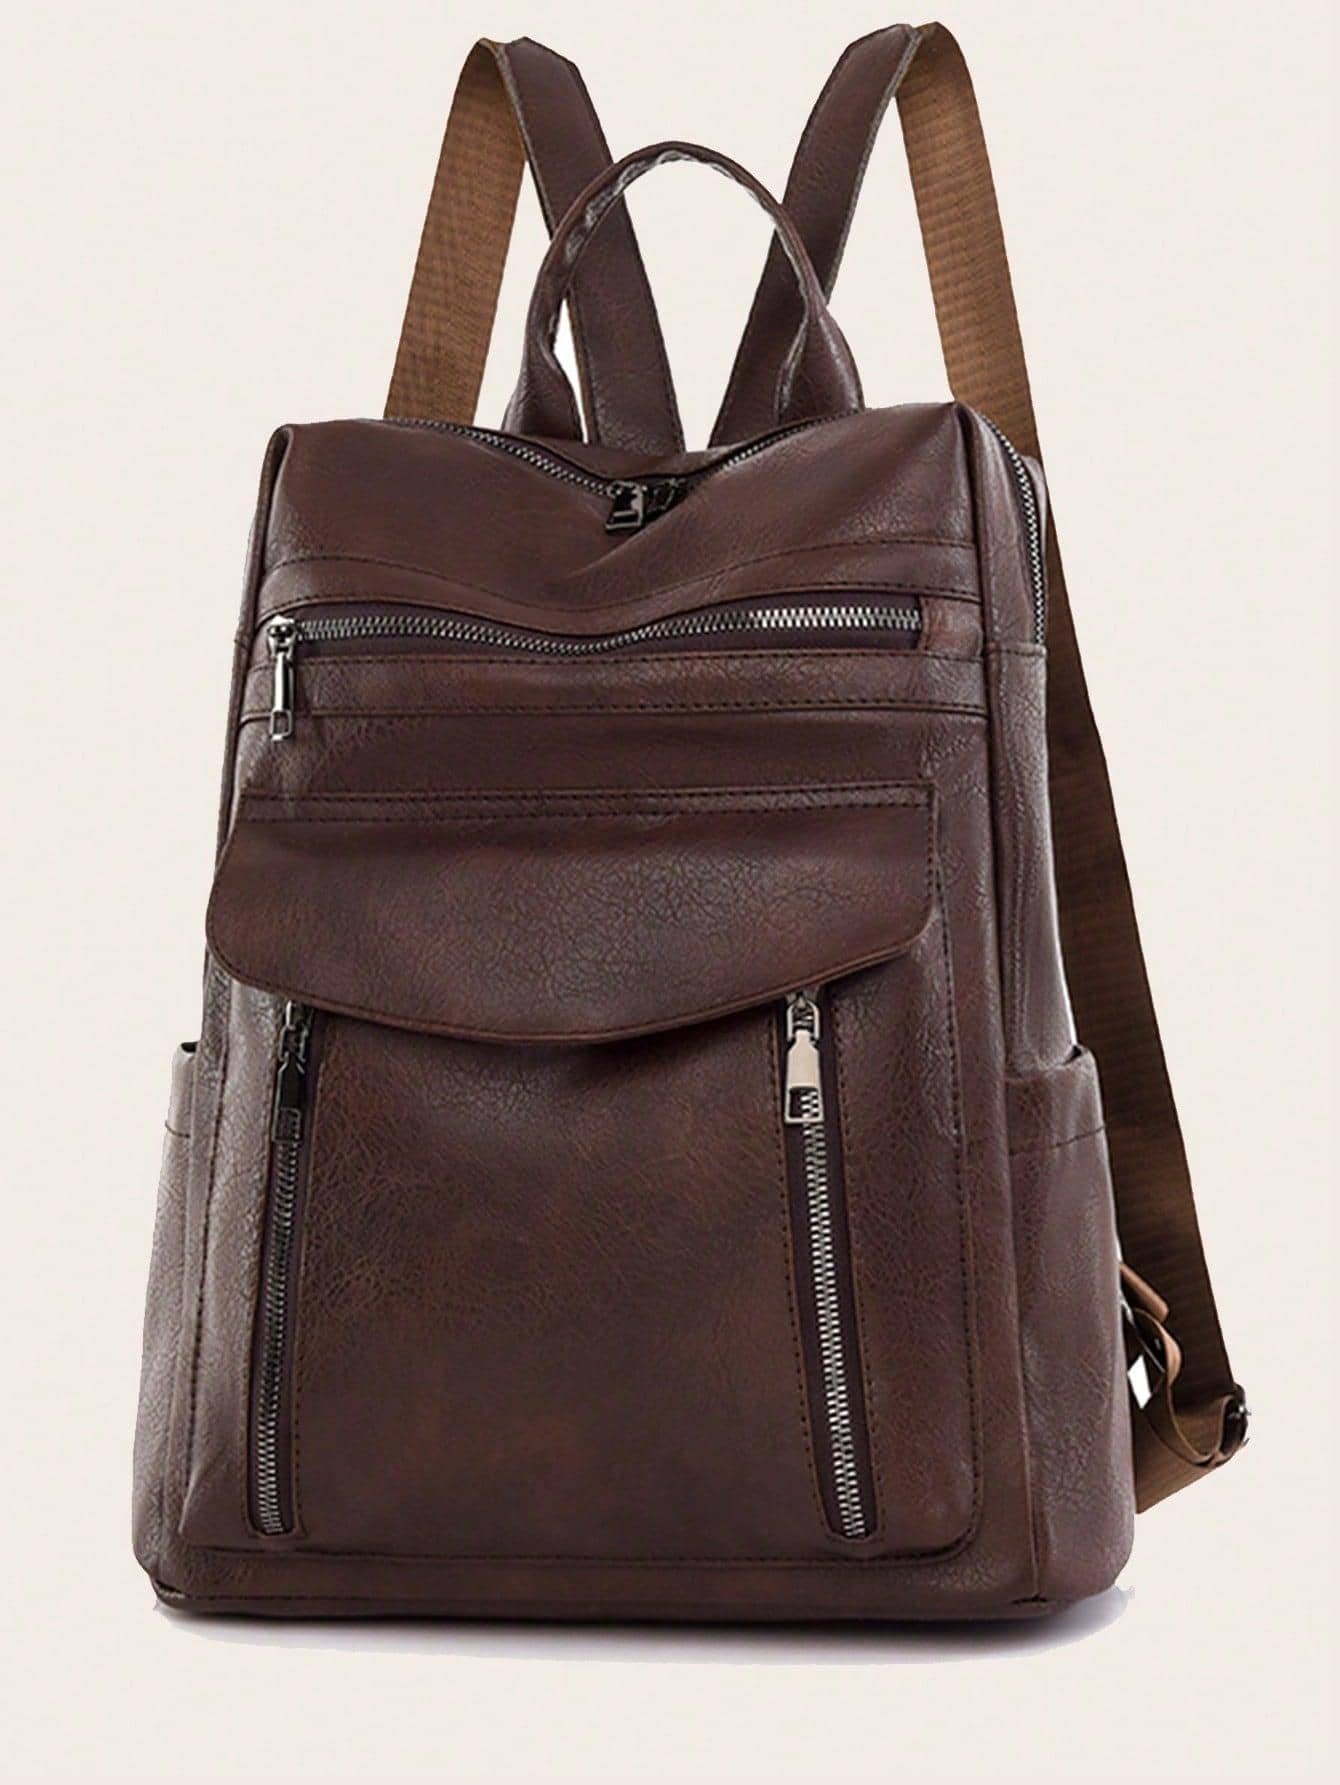 мясник и ножи мясницкий незаменимый безопасный уютный плед рюкзак 17 дюймов винтажный графический винтажный рюкзак для пикников Водонепроницаемый, кофейный коричневый